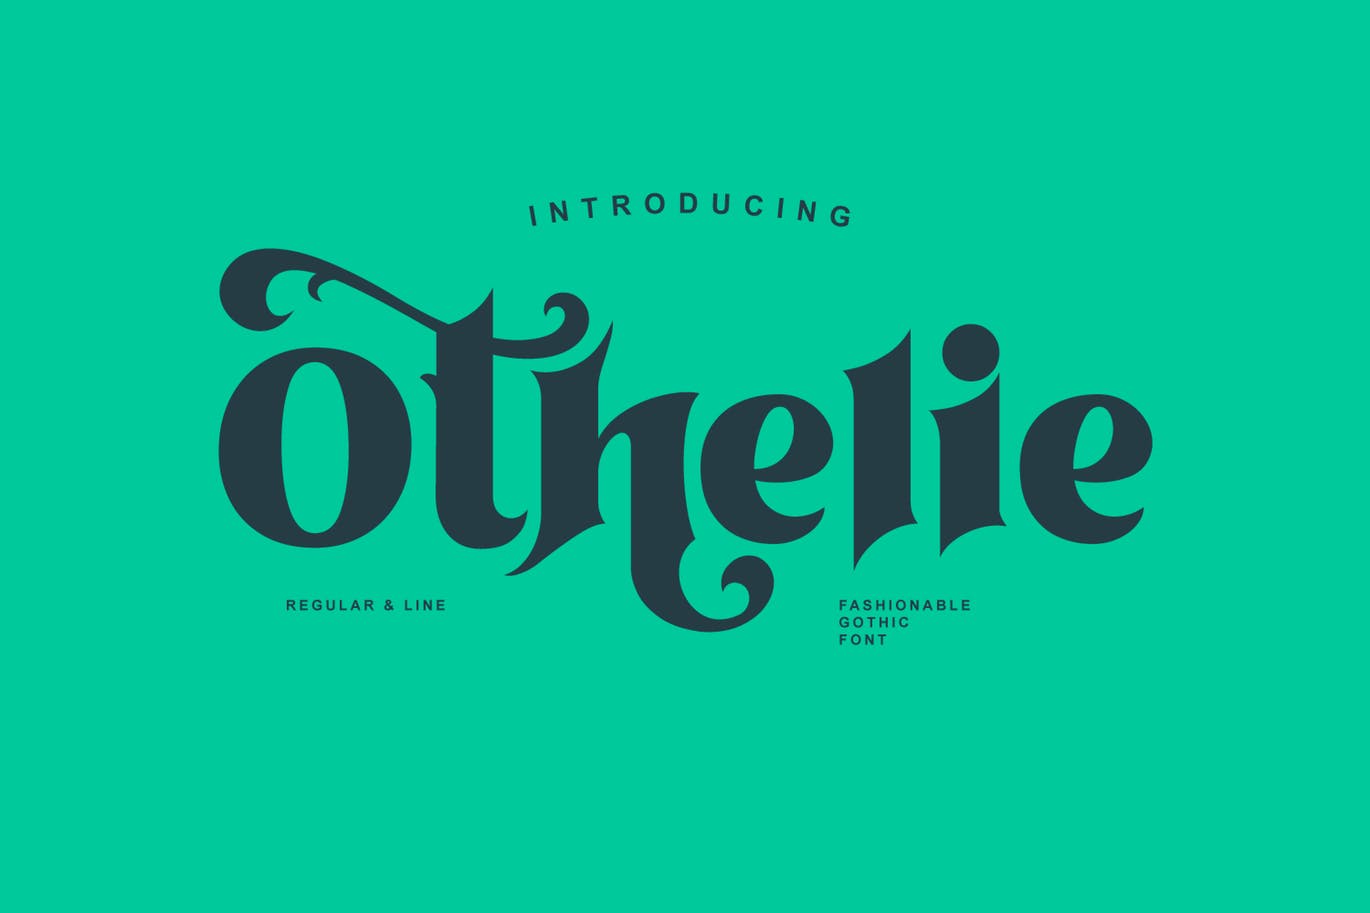 Othelie fashionable gothic font